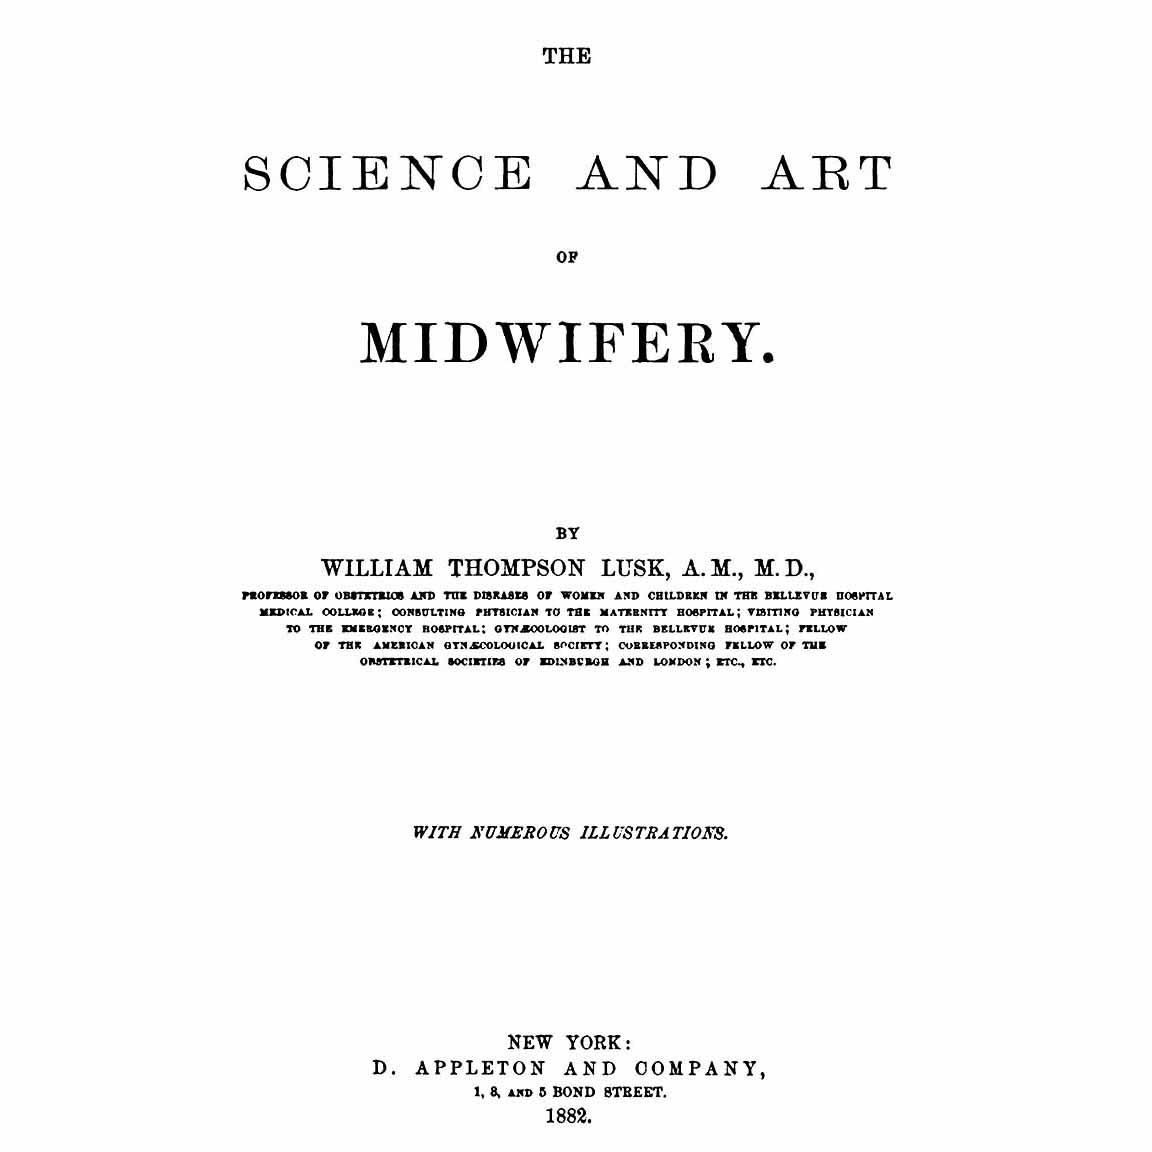 1882-LUSK-Science-Art-Midwifery-title